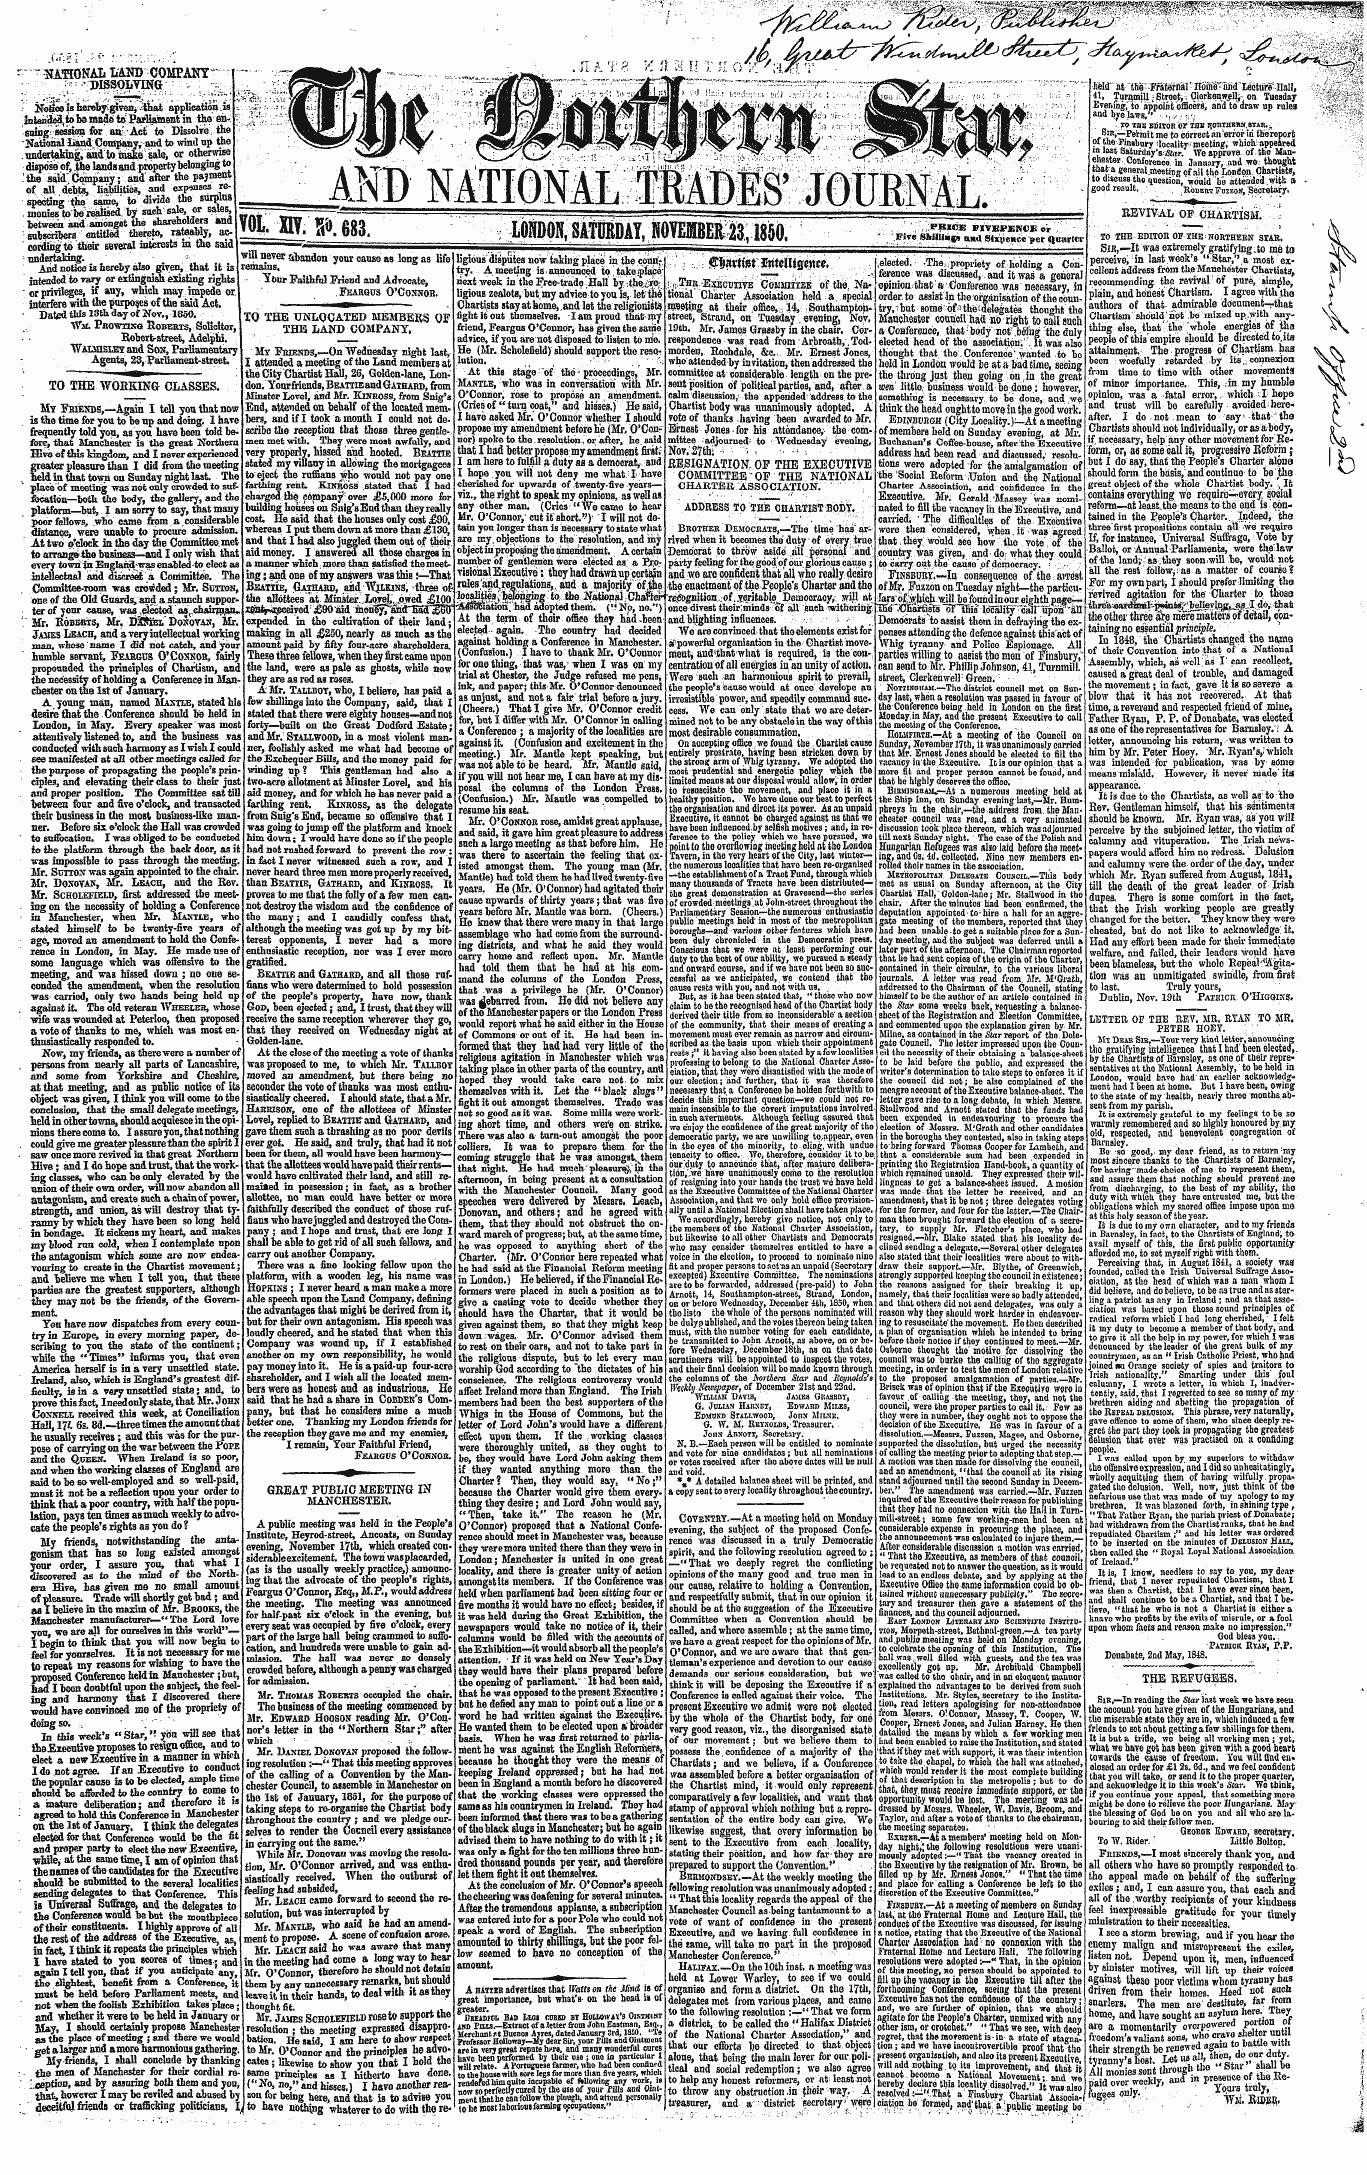 Northern Star (1837-1852): jS F Y, 2nd edition - $$&Tt$T Ettt$Mflow